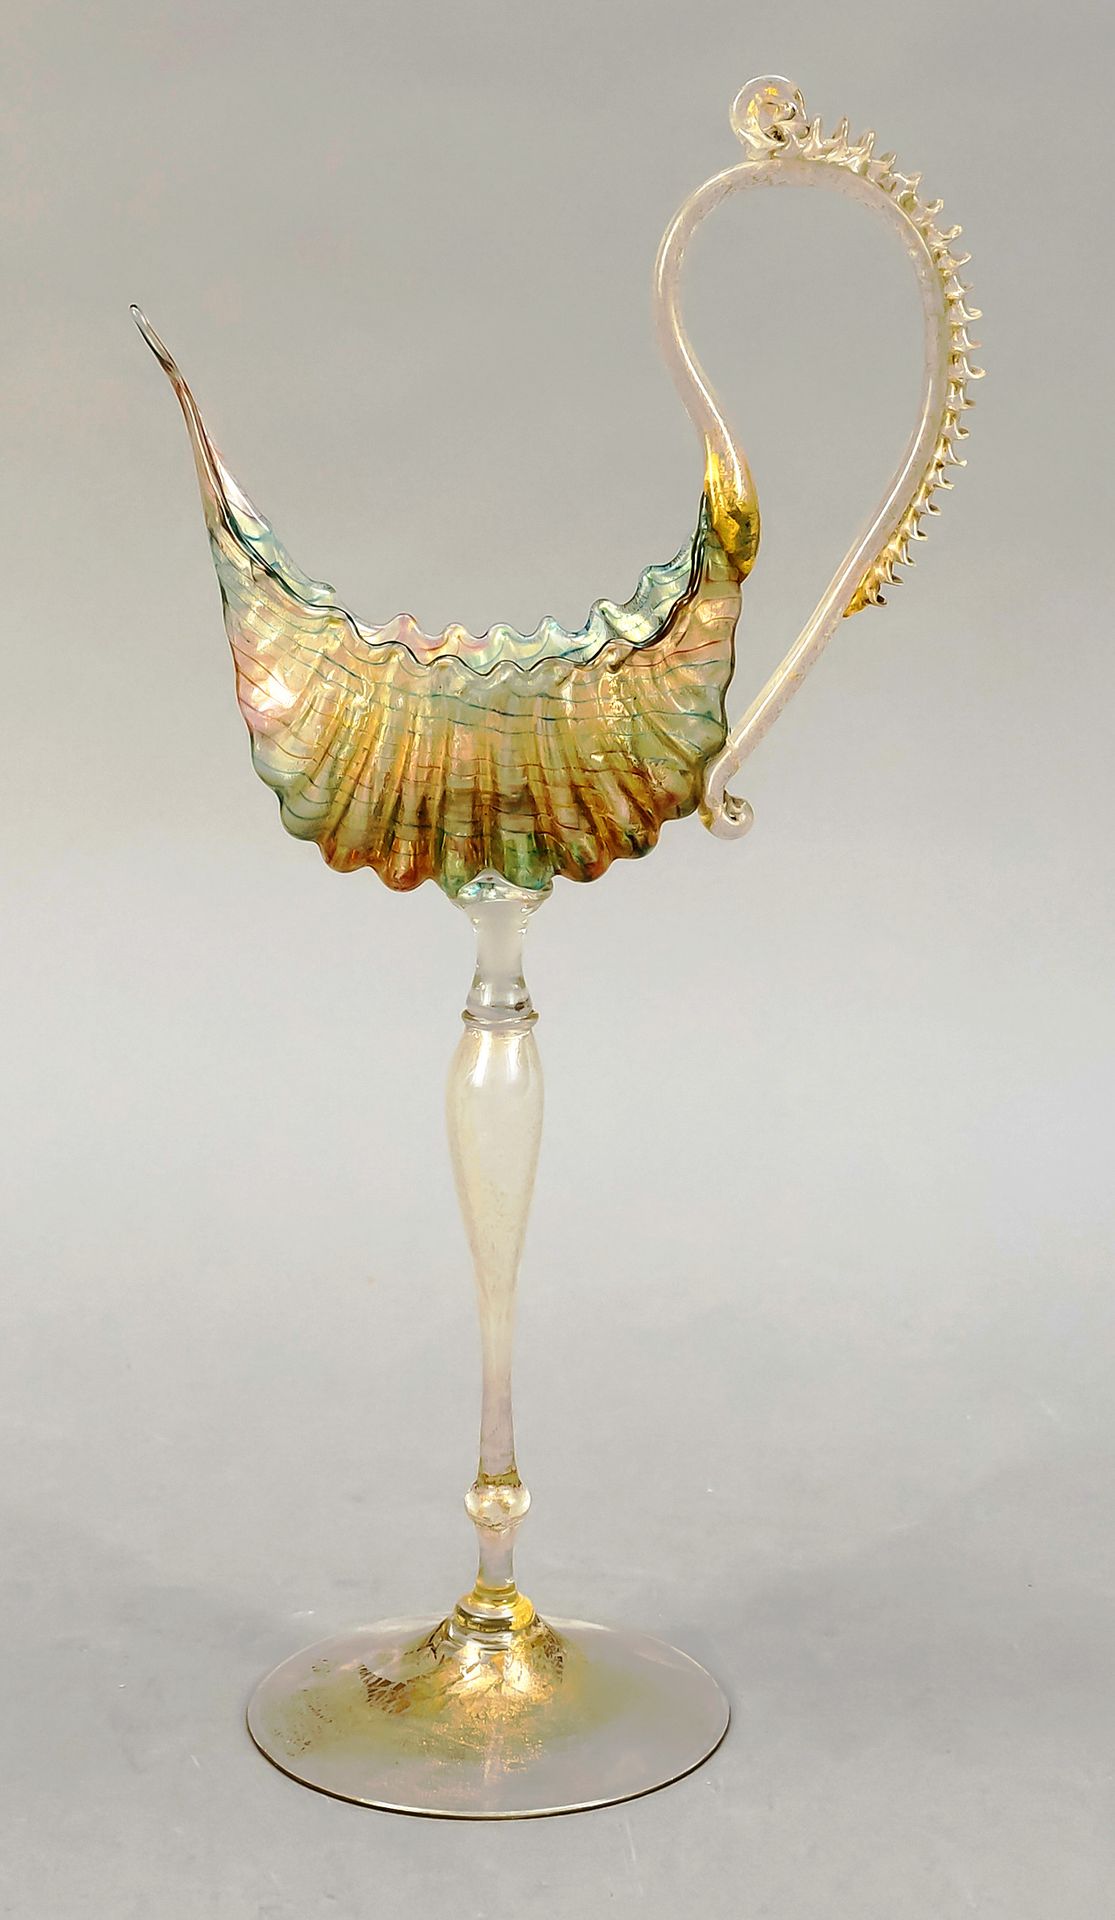 Null 装饰性高脚杯，意大利，20世纪下半叶，穆拉诺，鹦鹉螺高脚杯的风格，圆形圆盘底座，细长的轴，主体是一个风格化的贝壳形状，侧面有延伸的把手，透明玻璃上有绿&hellip;